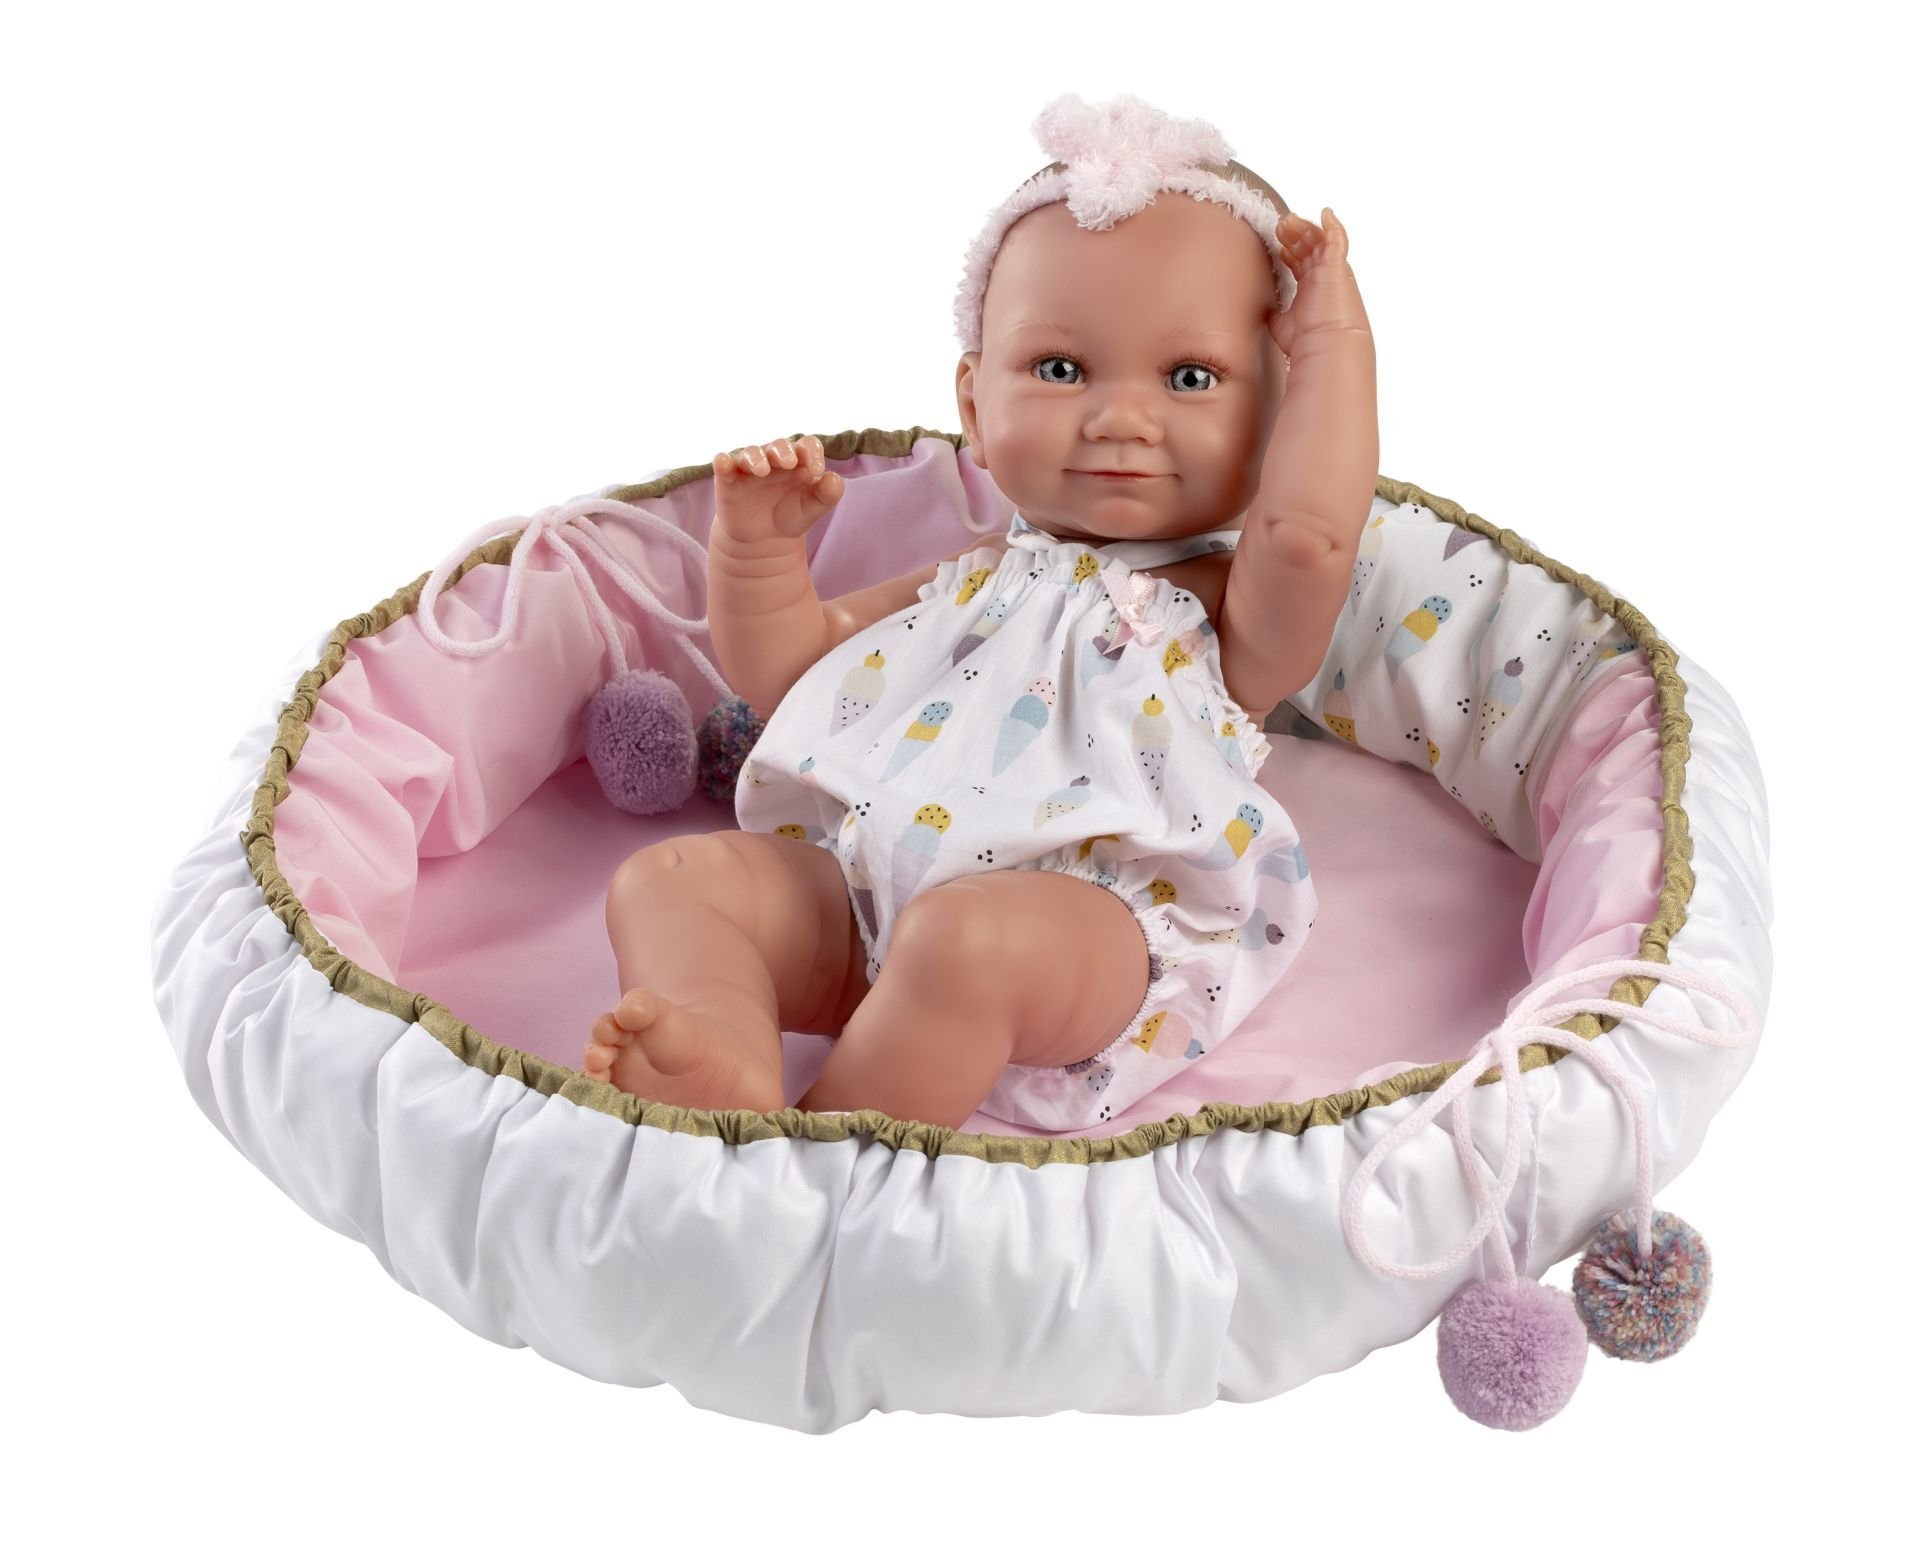 Llorens 73806 NEW BORN HOLČIČKA - realistická panenka miminko s celovinylovým tělem - 40 cm